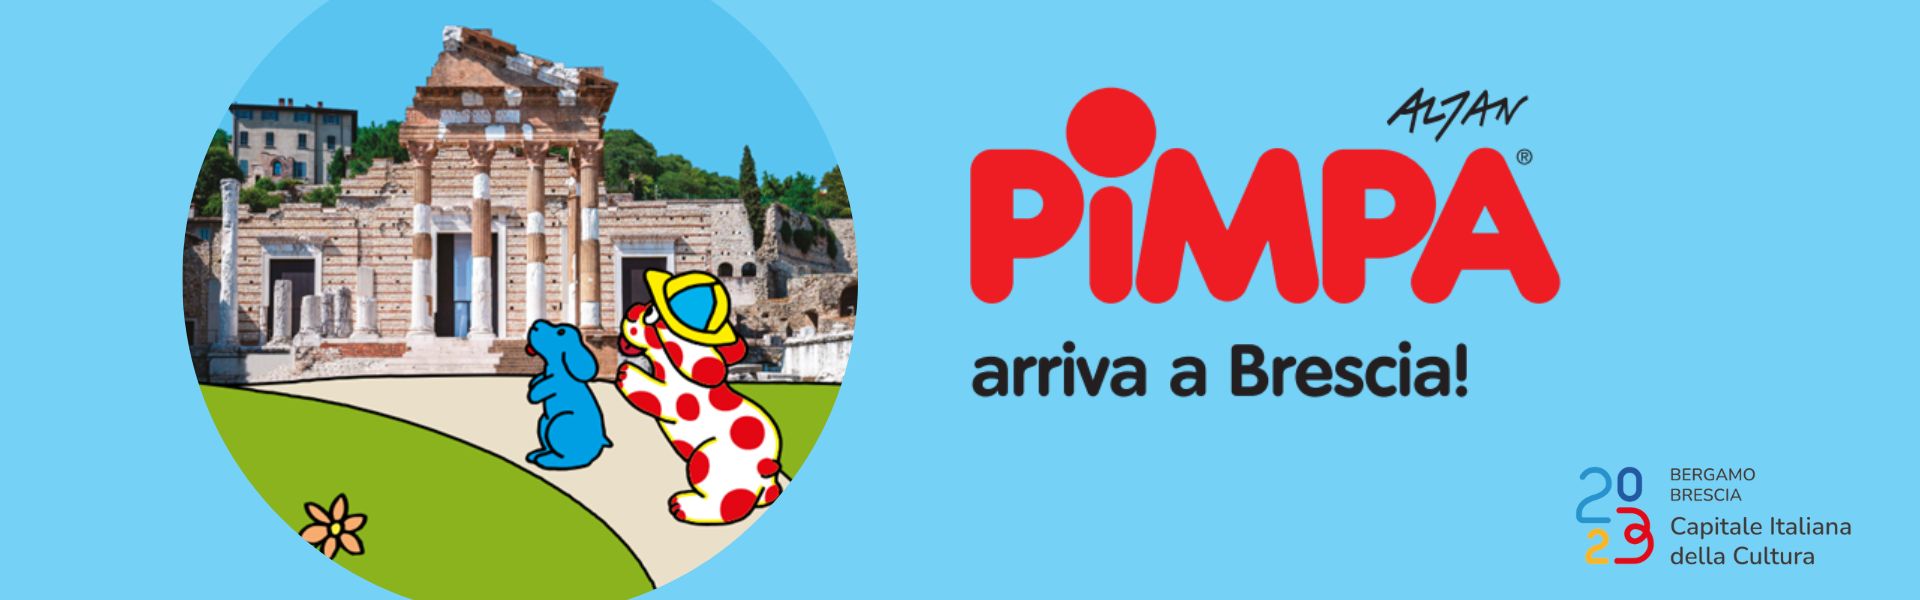 Pimpa arriva a Brescia